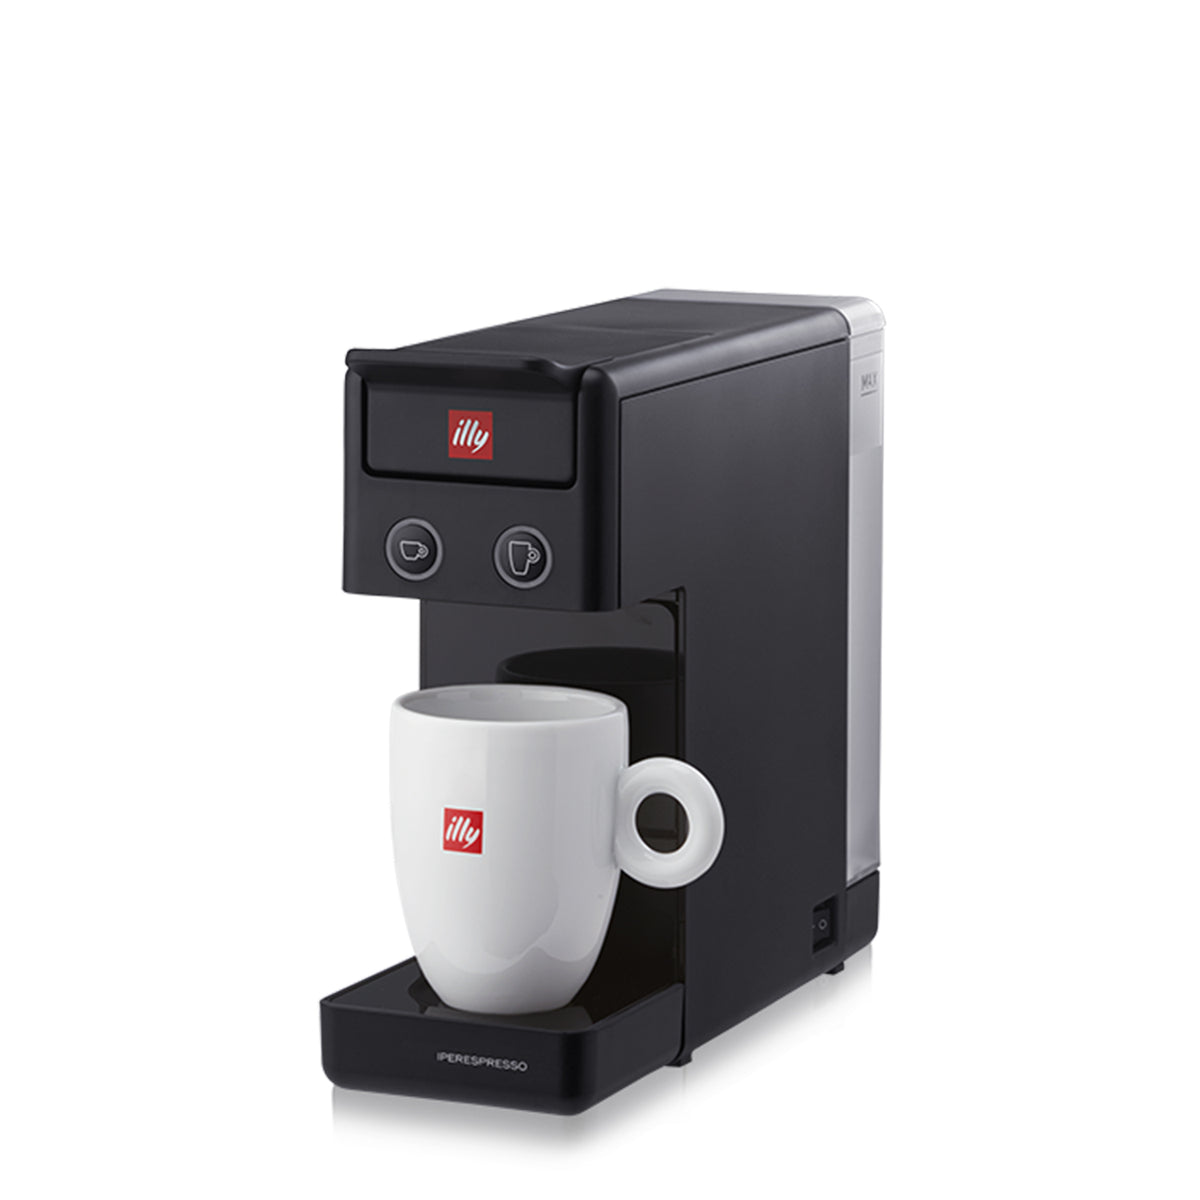 Blanco 0.75 litros plástico Illy Caffè máquina de Cápsulas Y3 Iperespresso 850 W 